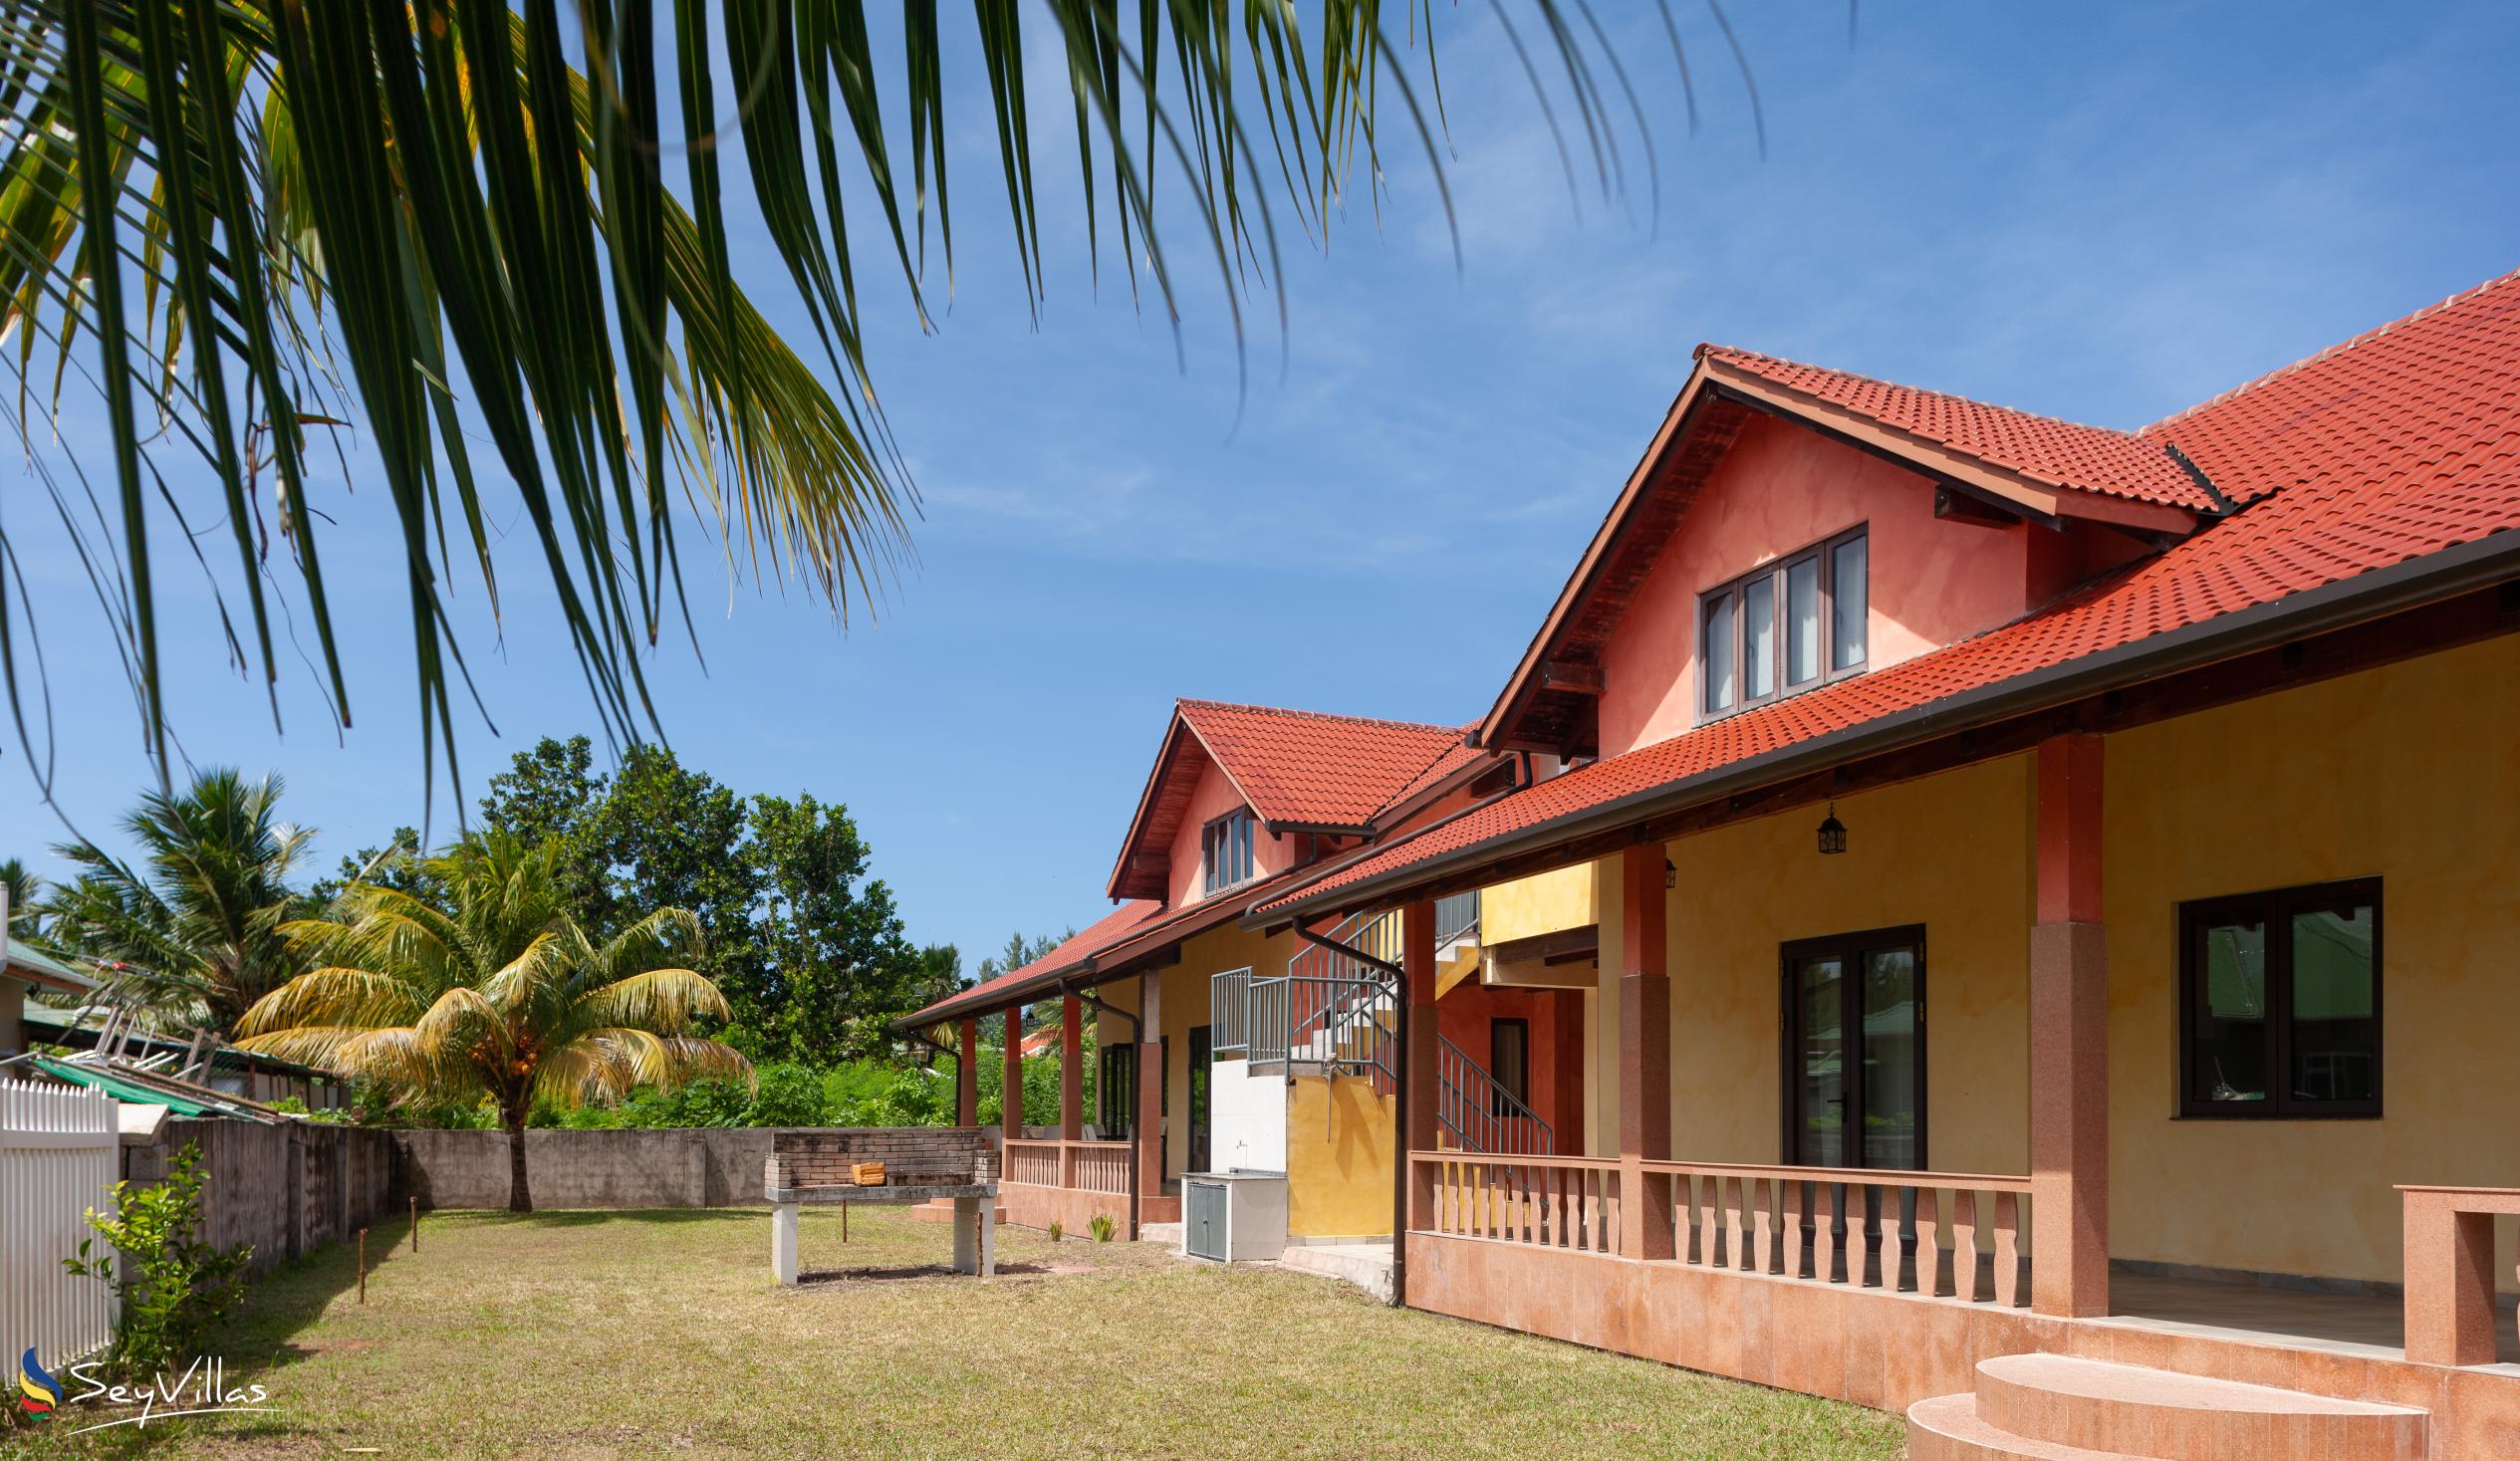 Foto 1: Villa Sole - Aussenbereich - Praslin (Seychellen)